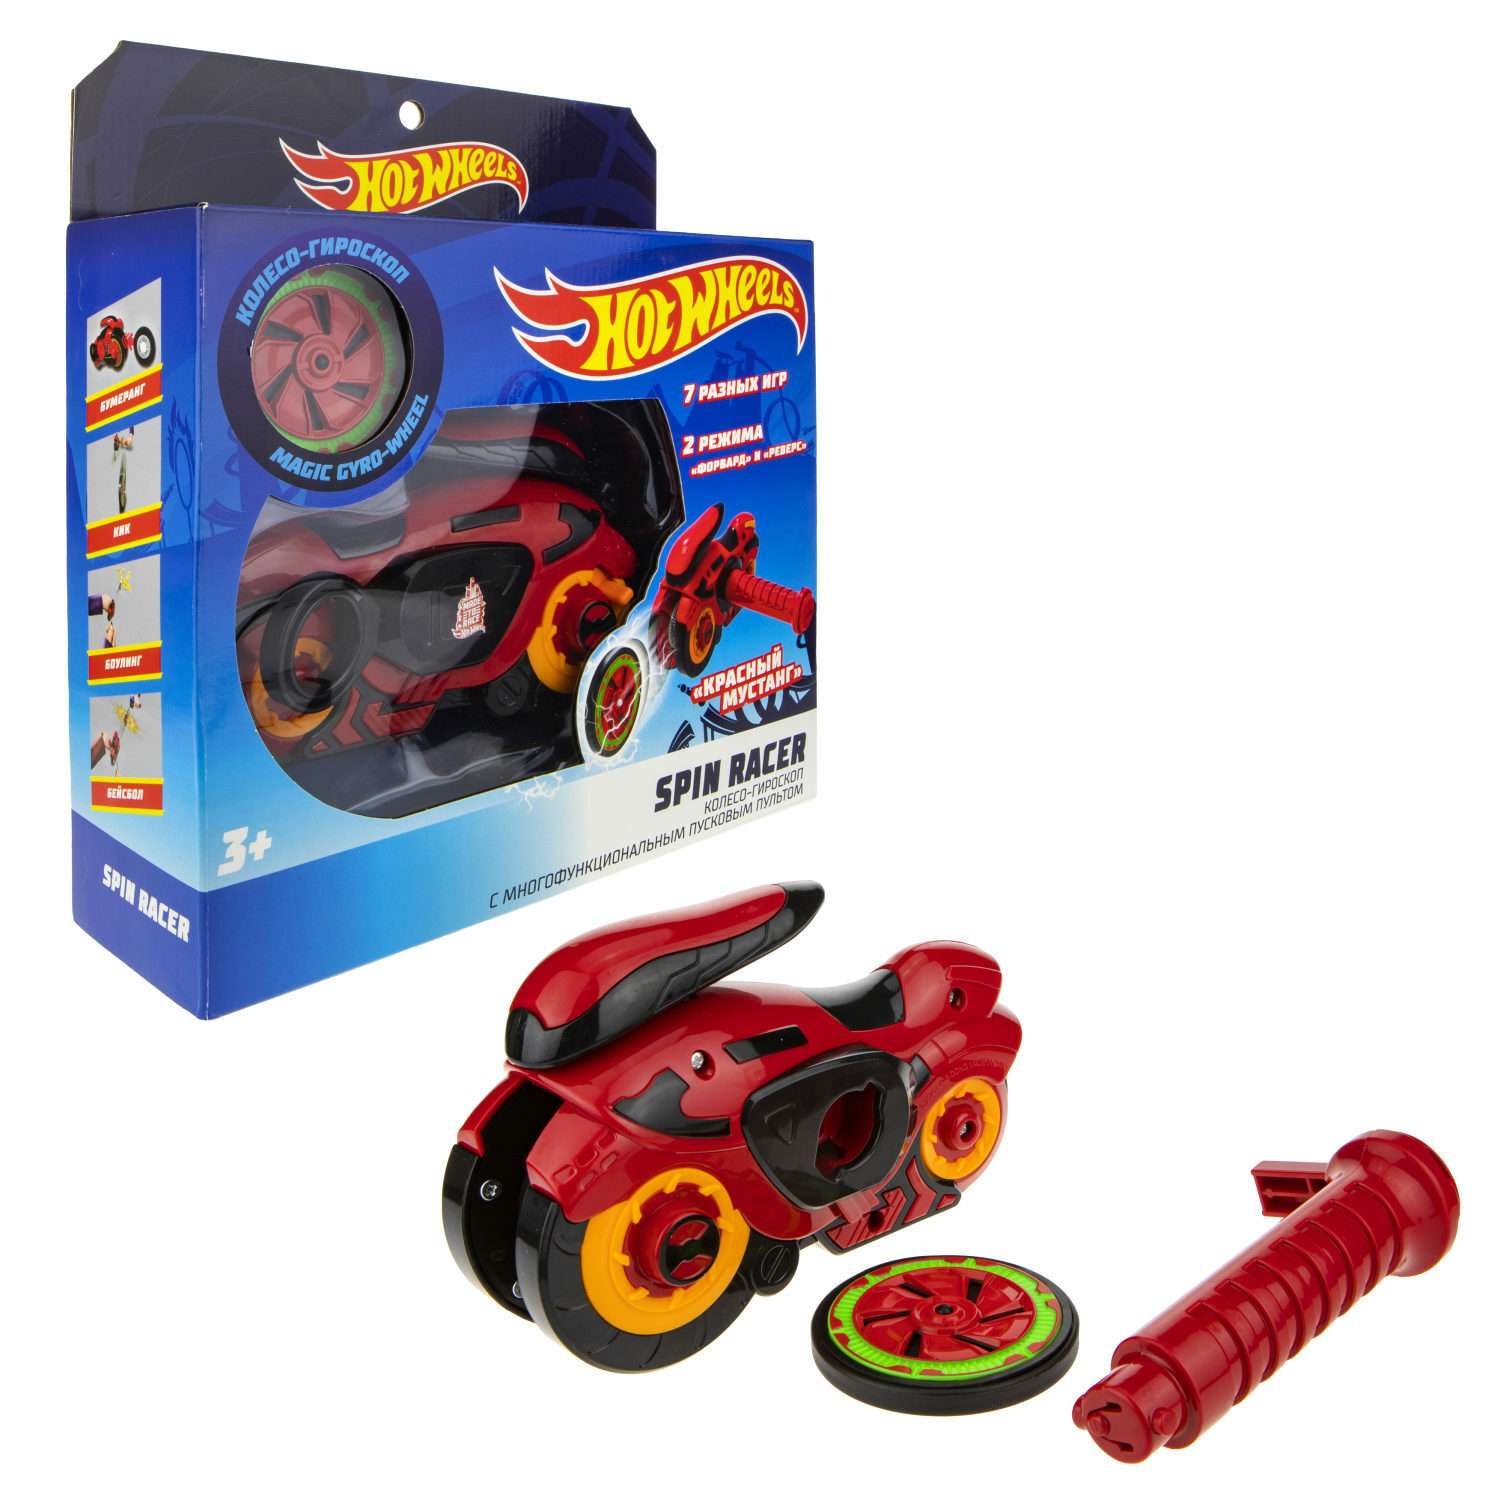 Игровой набор Hot Wheels Spin Racer Красный Мустанг игрушечный мотоцикл с колесом-гироскопом Т19372 - фото 2